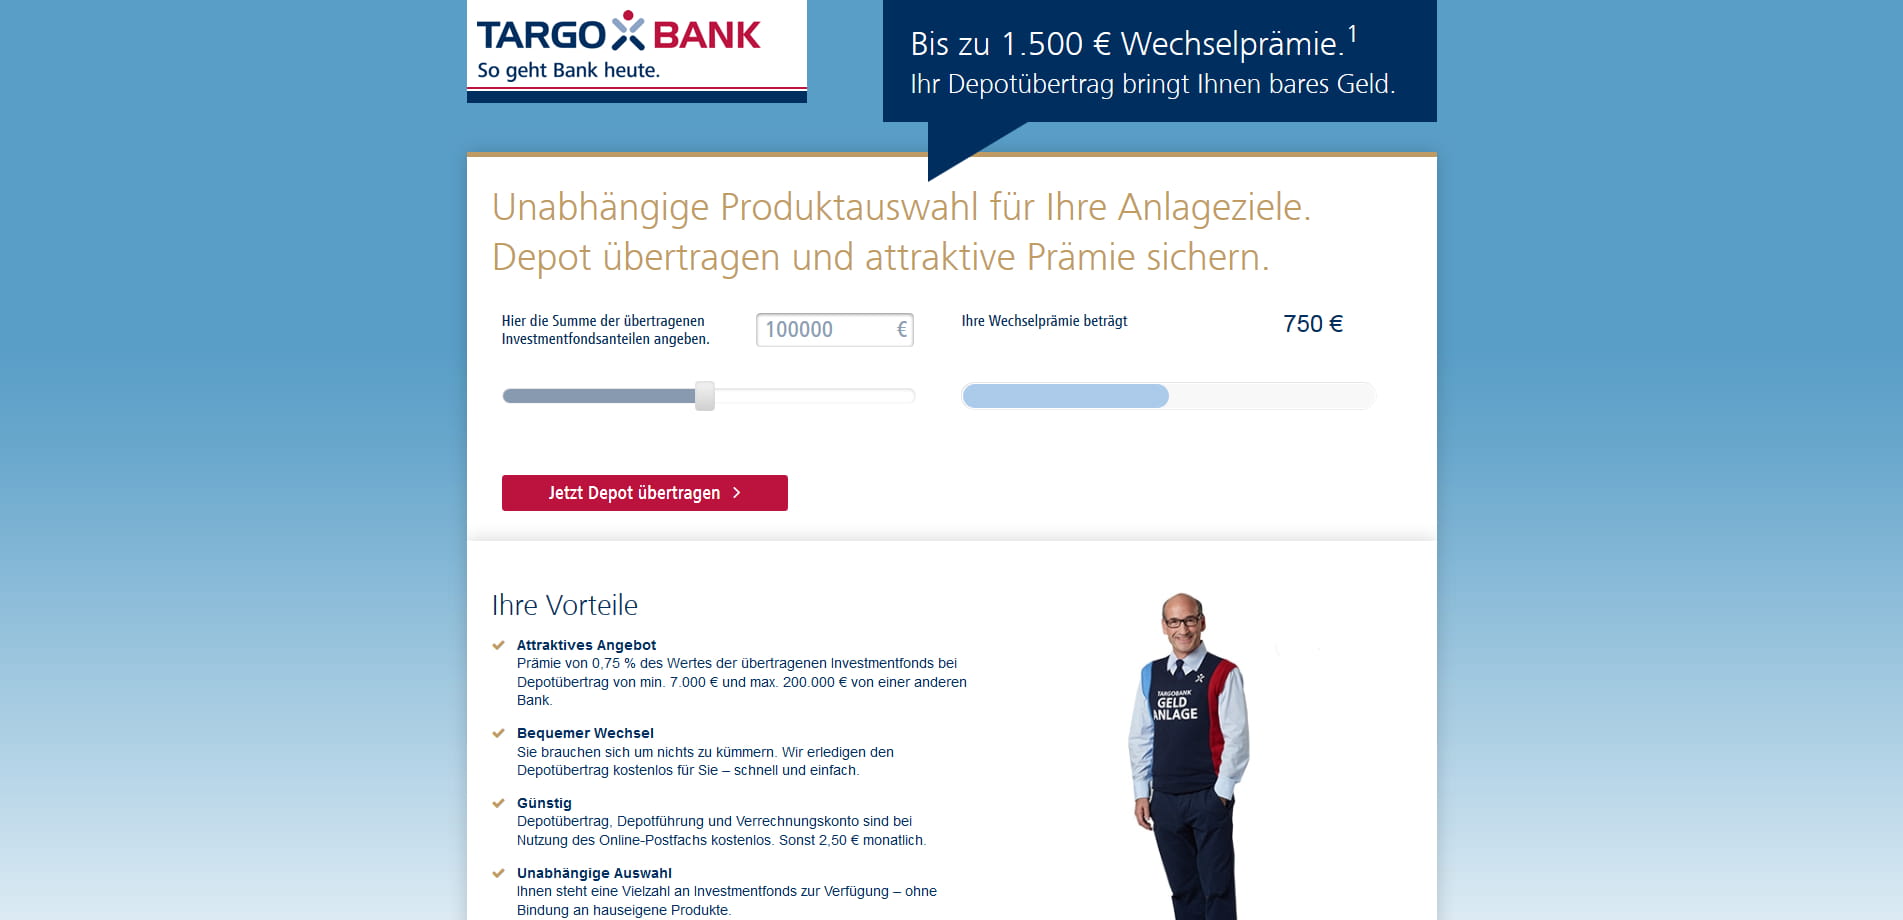 Targobank Wirbt Im Juli Mit Bis 1 500 Euro Depotwechsel Pramie Fur Ubertragene Investmentfonds Aktien Depot De